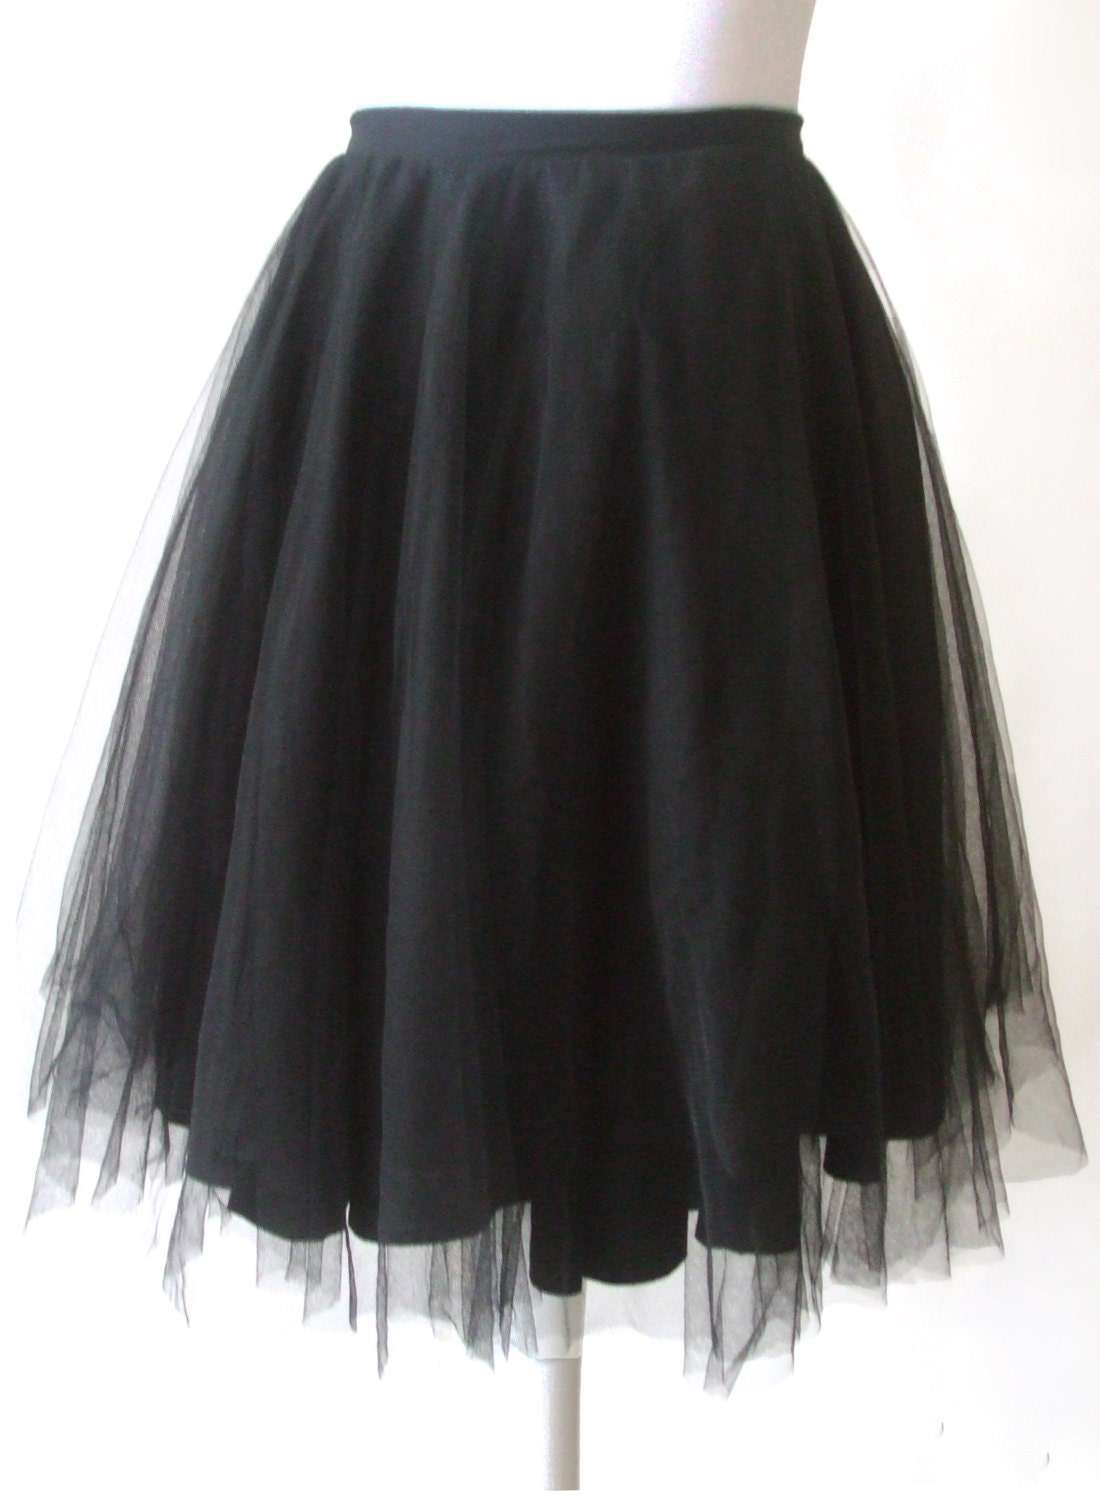 Black Tulle Skirt Prom Outfit 50s Circle Tutu Ballerina Skirt | Etsy UK